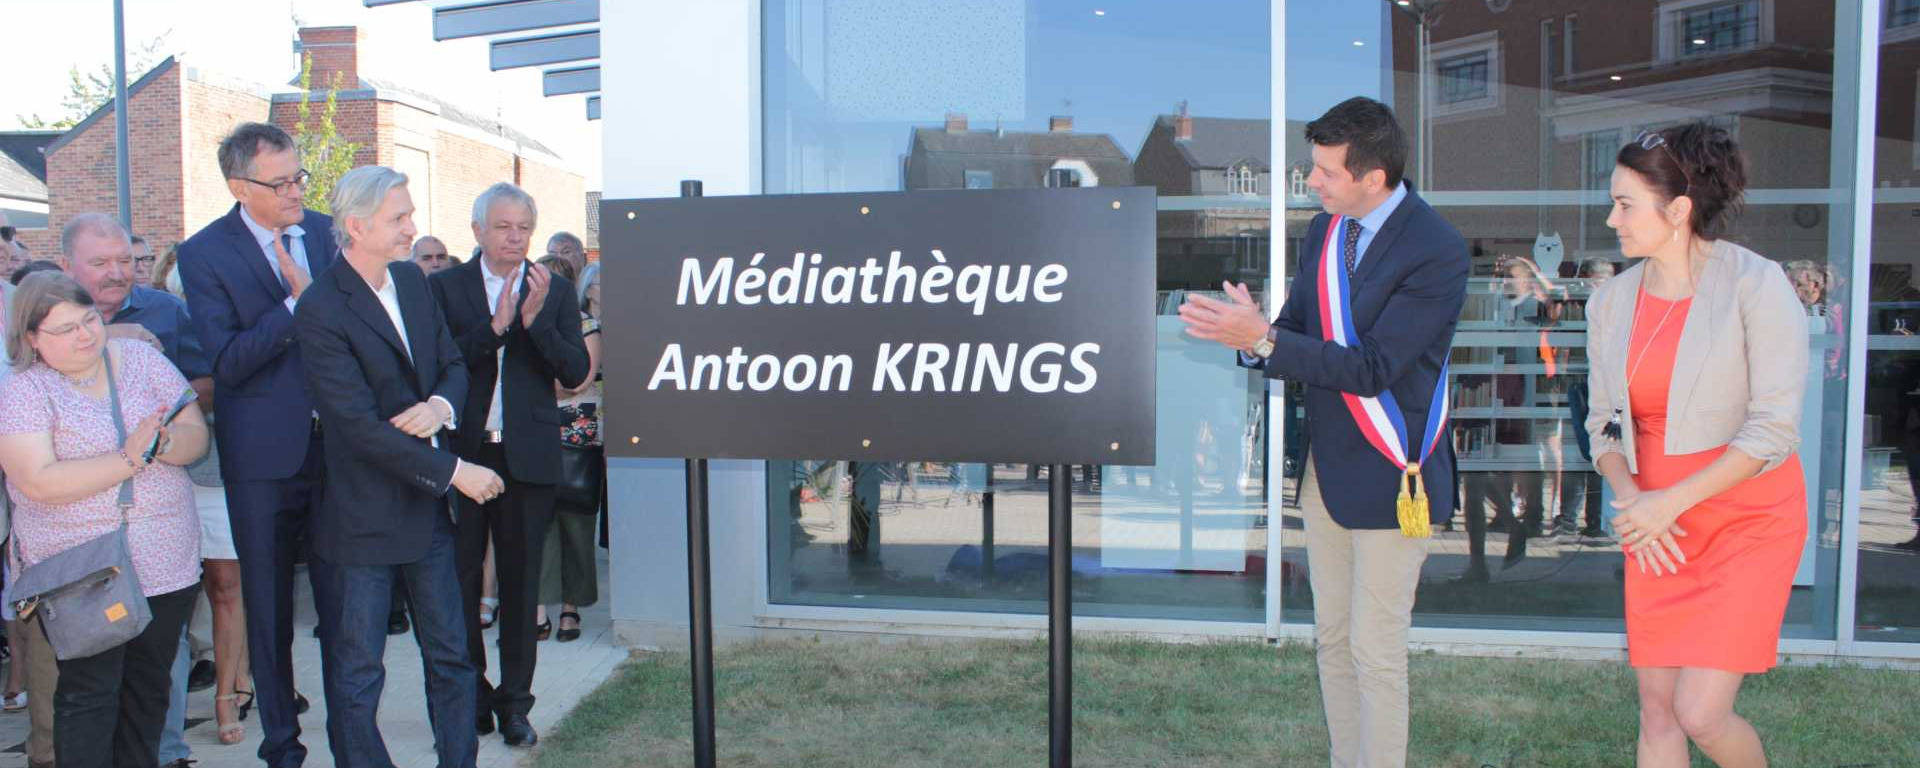 Retour en images sur l'inauguration de la médiathèque Antoon Krings ce samedi 24 septembre 2016 en présence de l'écrivain.